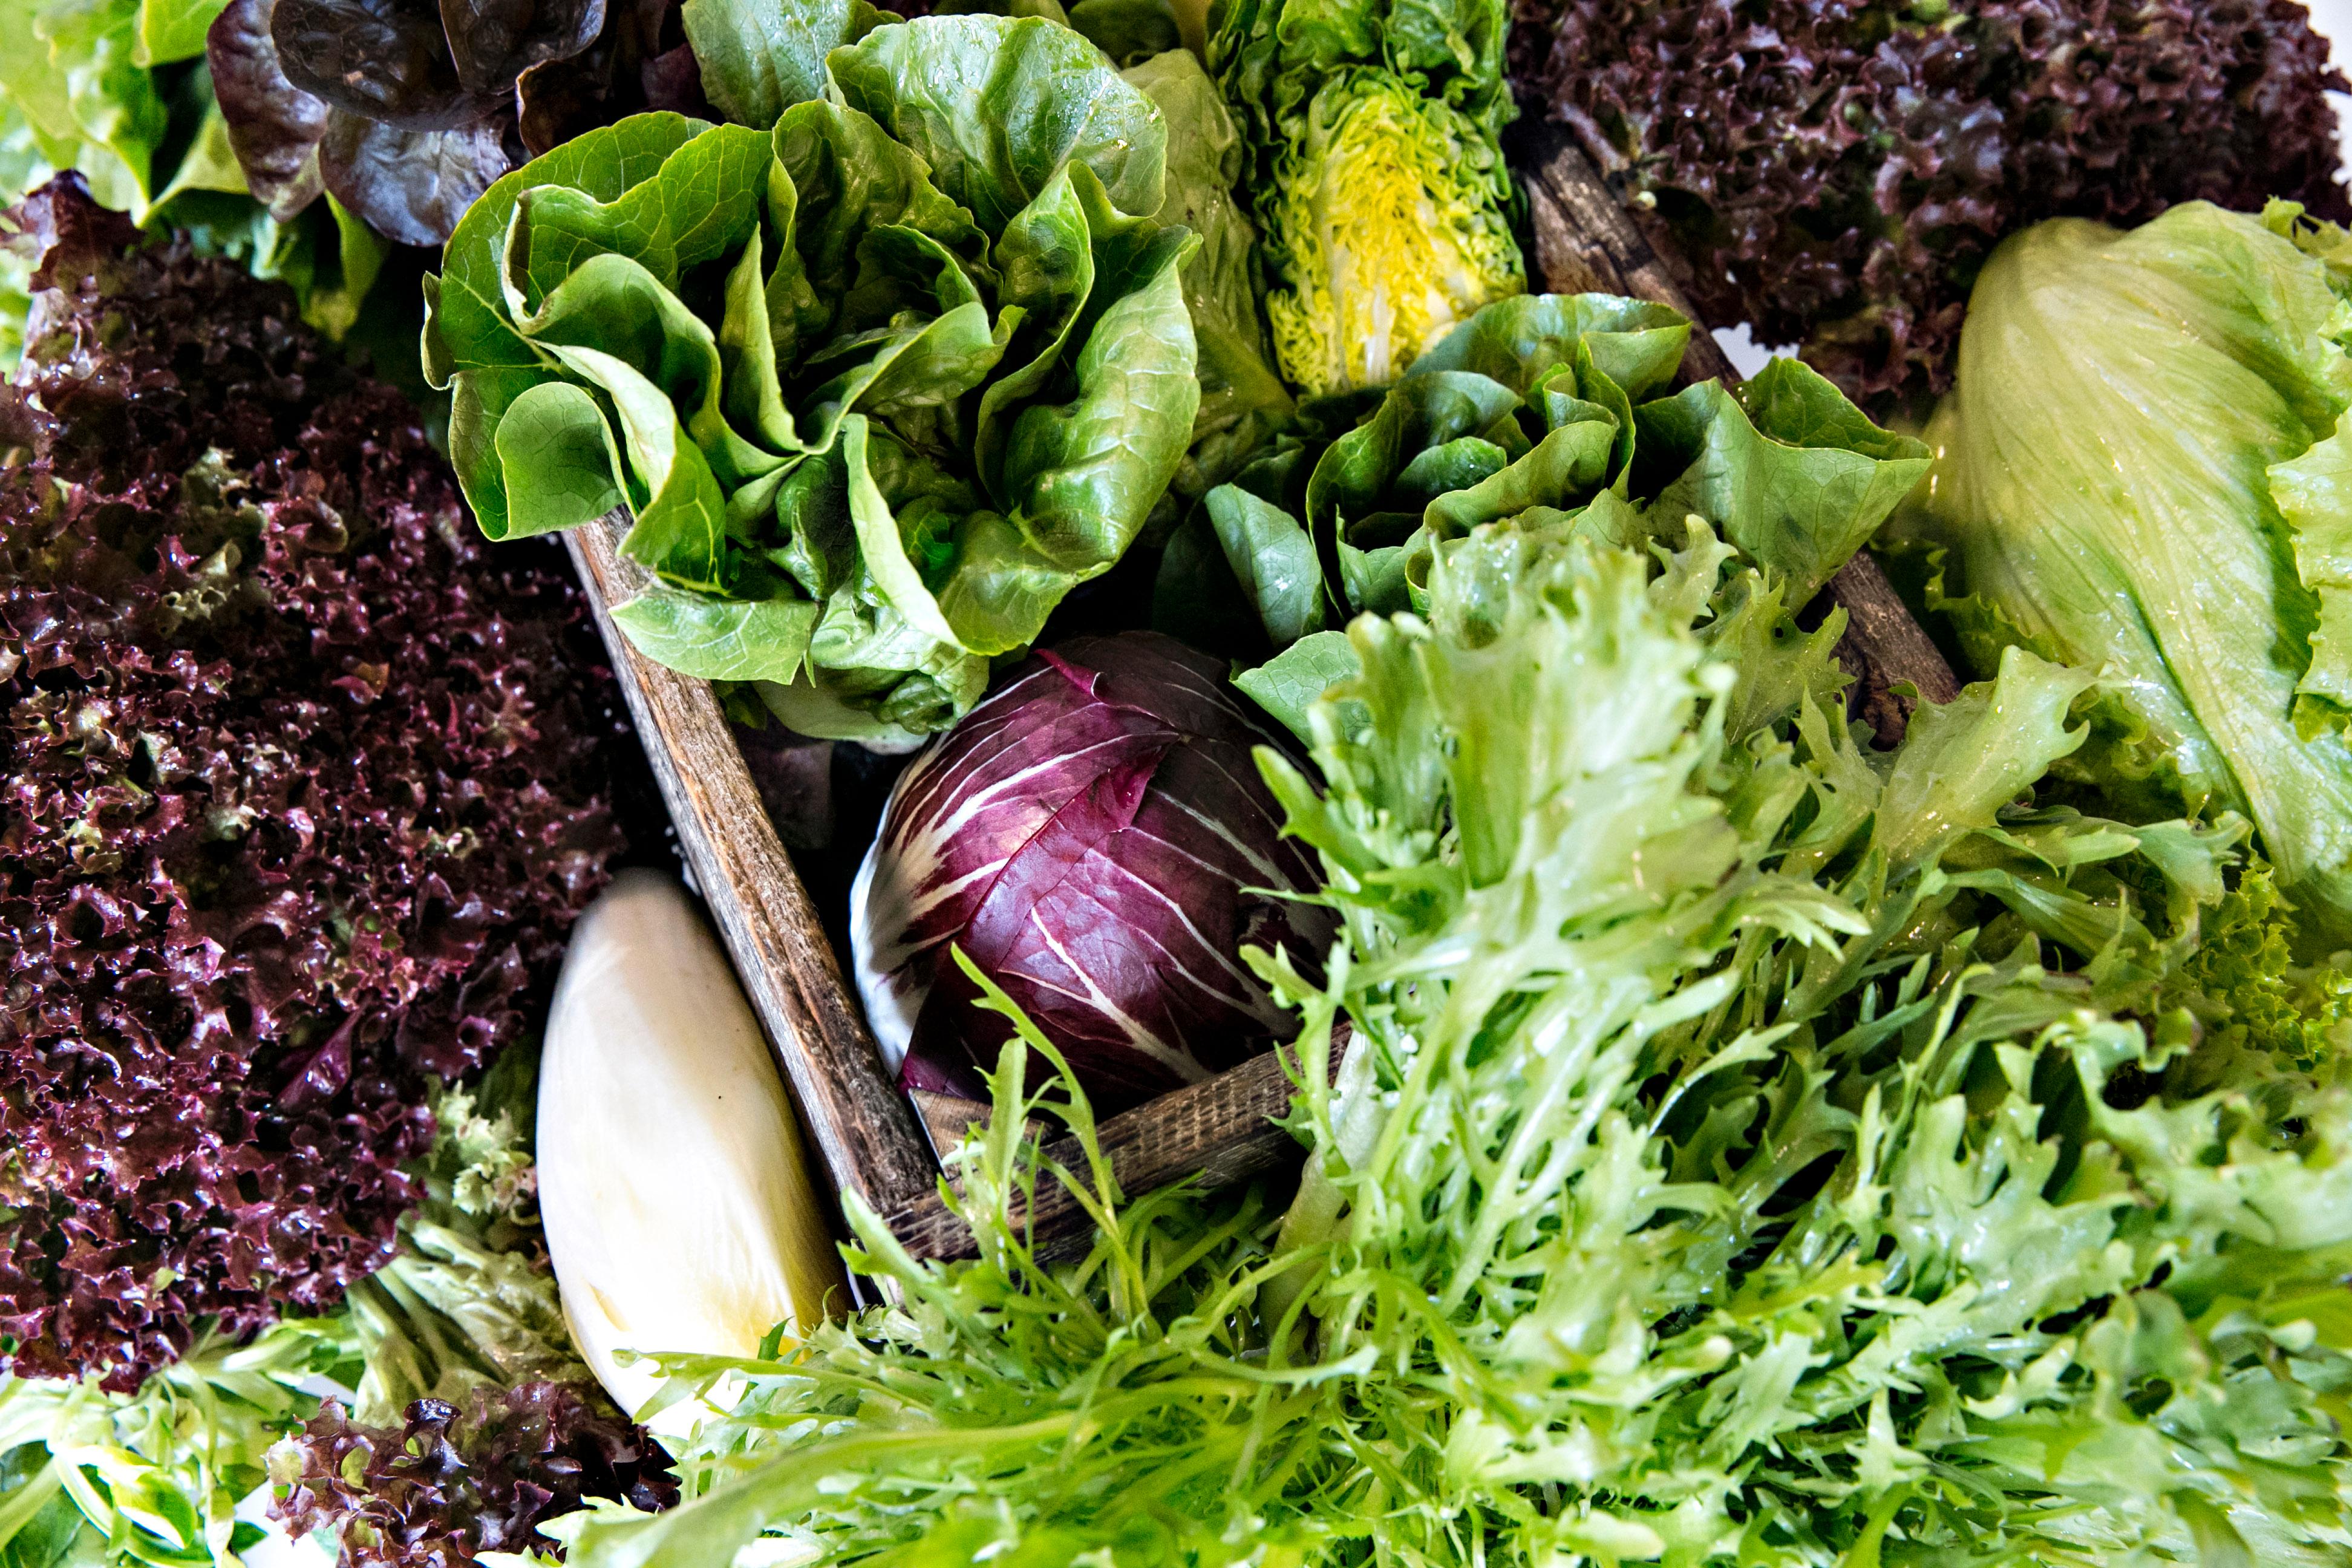 FORSKJELLIGE TYPER: Mange salater små, gjør en stor salat. Her ses blant annet lollo rosso, radicchio, frisée og hodesalat.